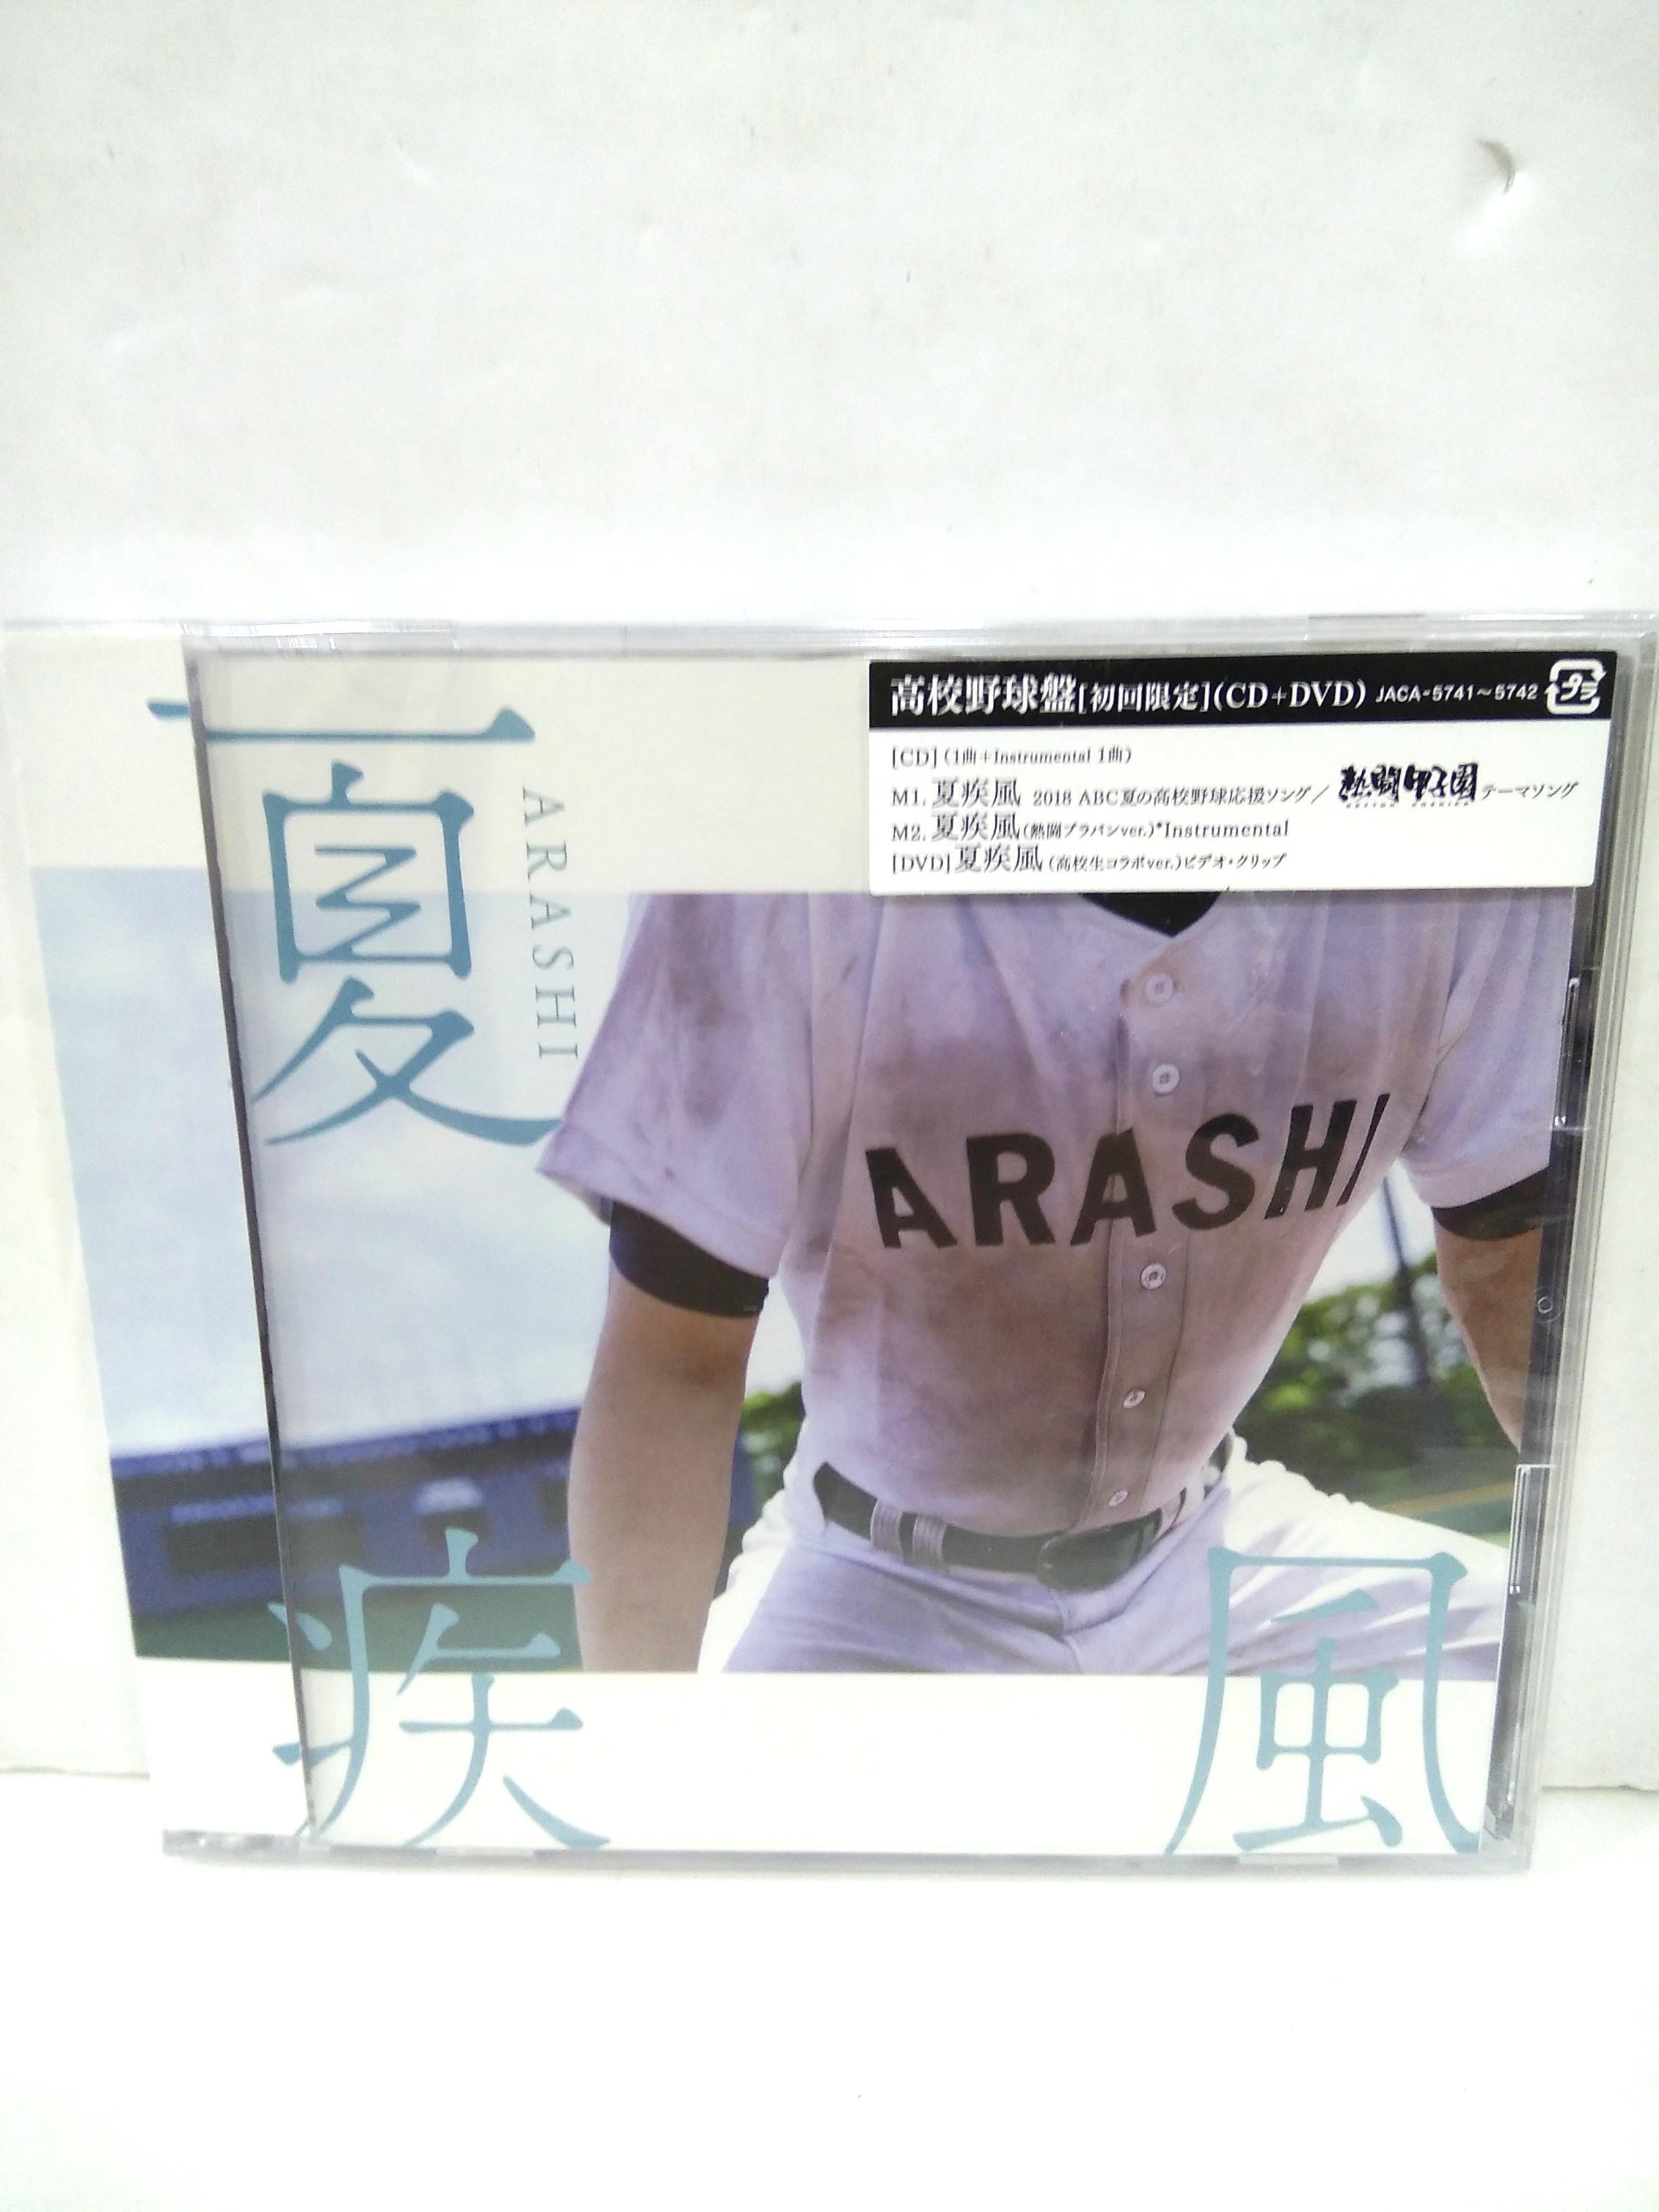 Arashi 嵐夏疾風高校野球盤日本版, 興趣及遊戲, 收藏品及紀念品, 日本